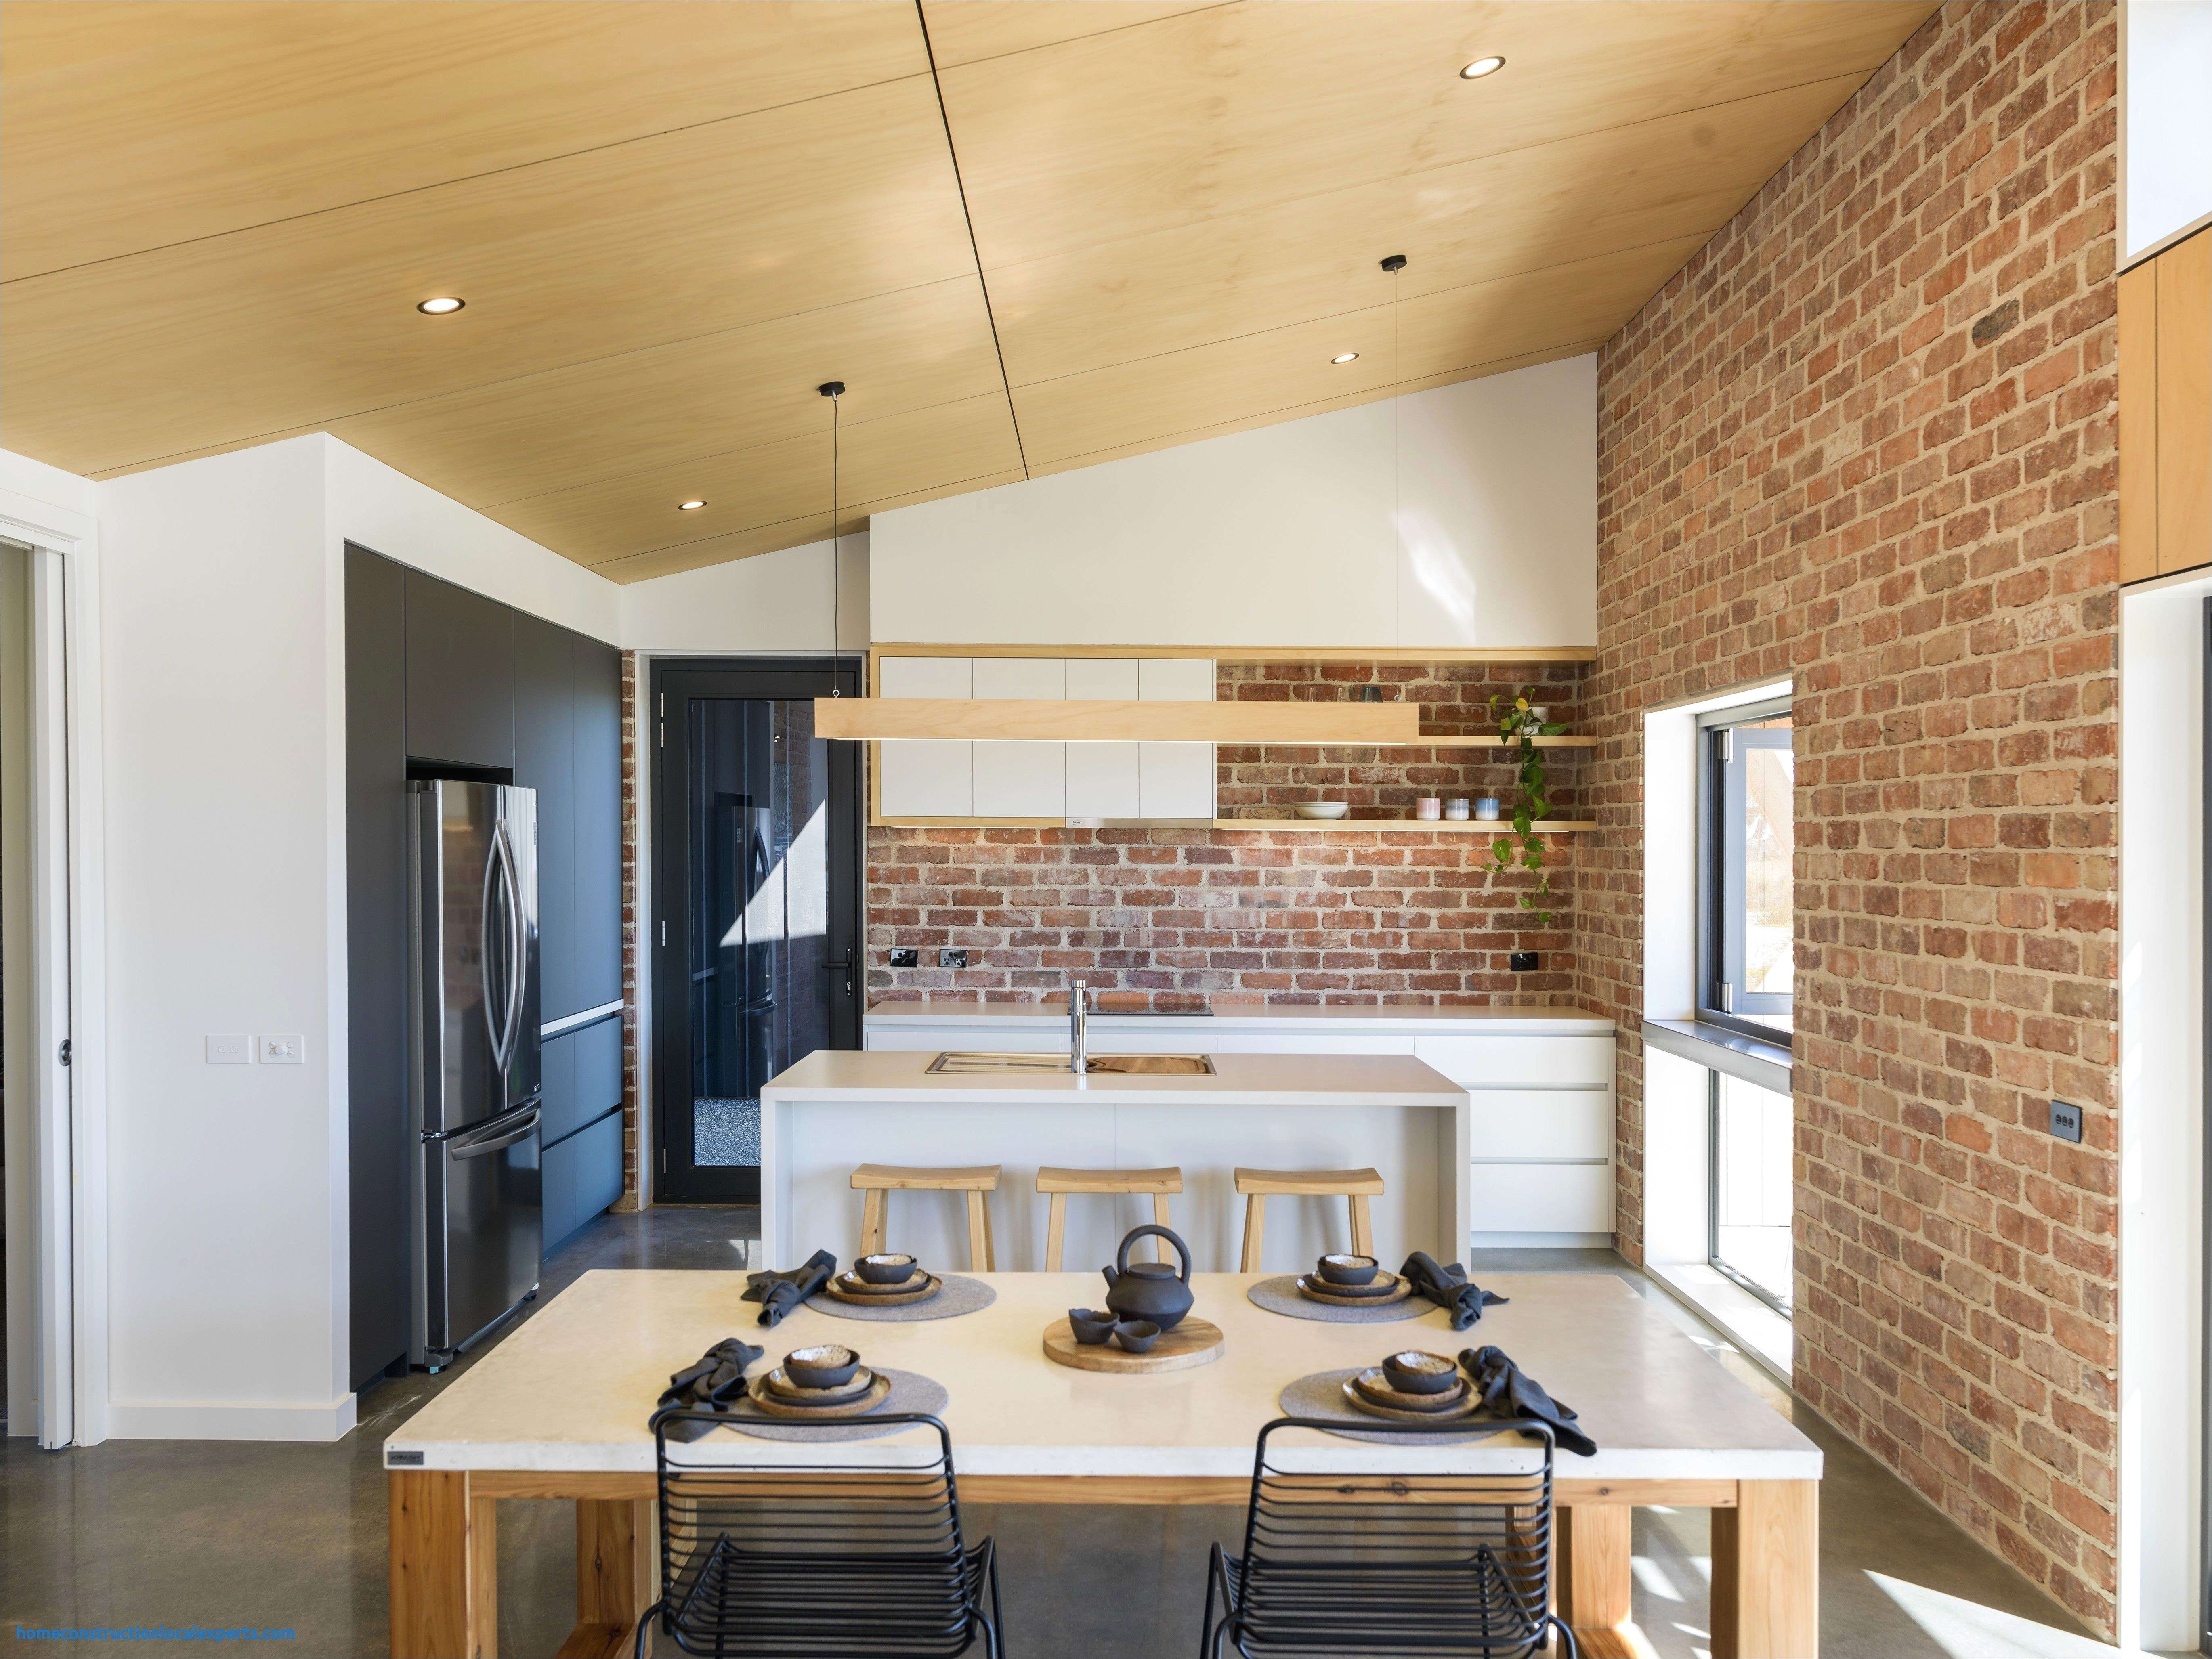 39 cool ideas studio apartment interior design inspiring home decor